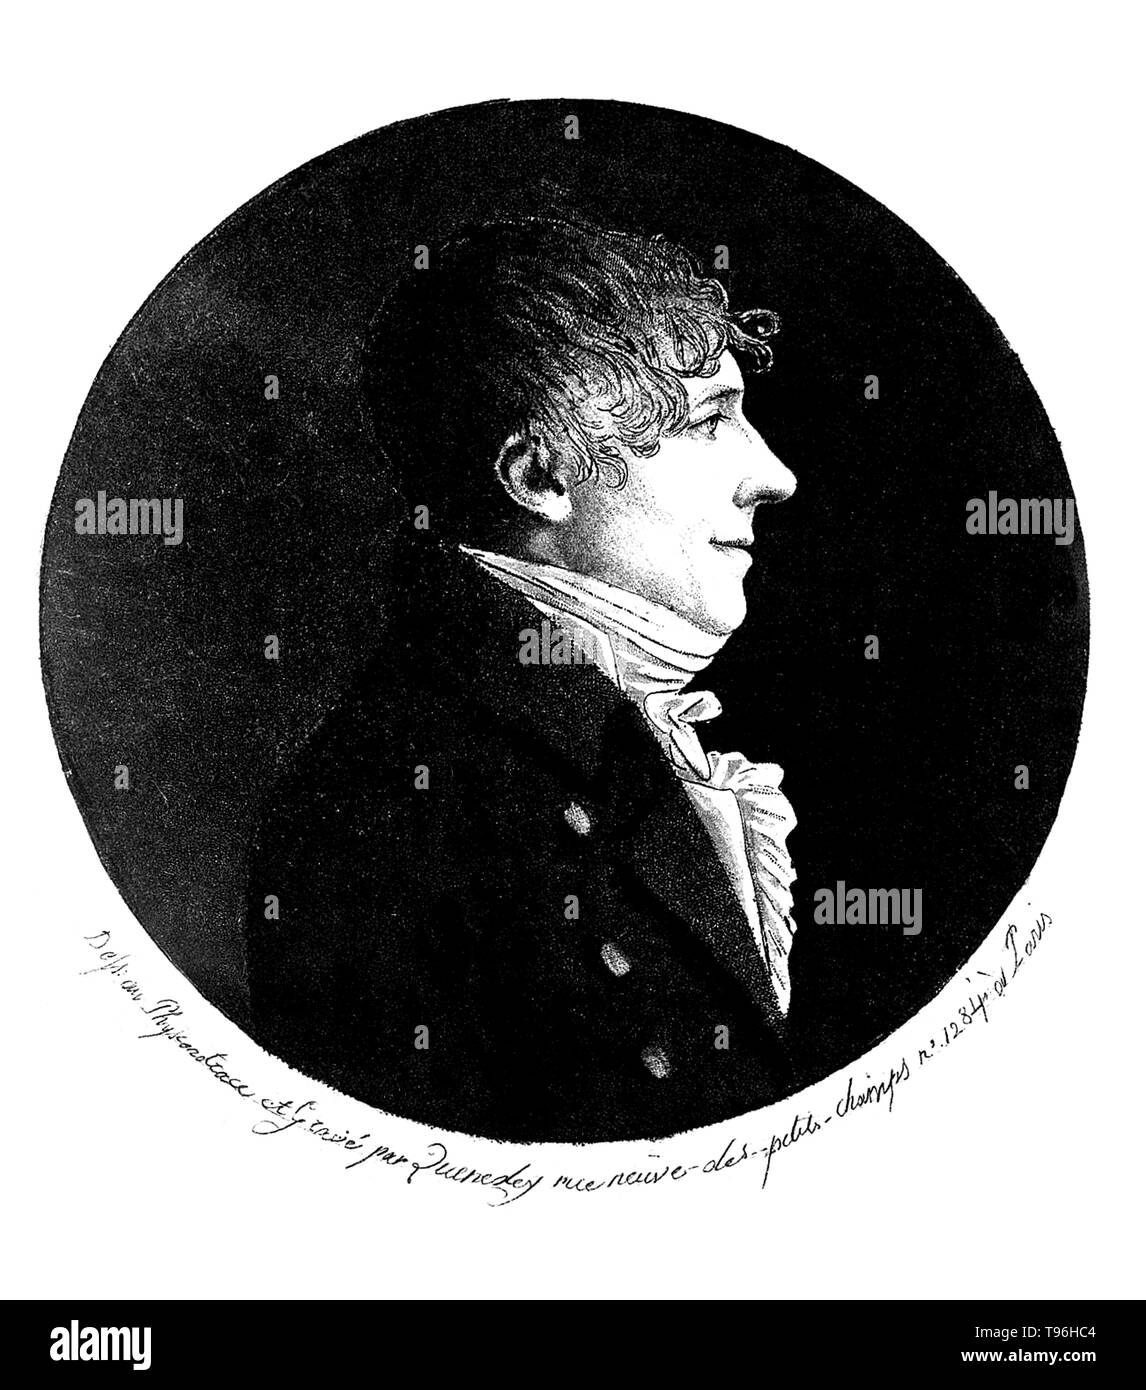 Jean-Baptiste Biot (Aprile 21, 1774 - 3 febbraio 1862) era un fisico francese, astronomo e matematico che ha stabilito la realtà di meteoriti, realizzato un inizio di volo in pallone aerostatico e studiato la polarizzazione della luce. Biot realizzato numerosi contributi alla comunità scientifica, soprattutto in ottica, magnetismo, e Astronomia. In fisica, particolarmente elettromagnetismo, la legge Biot-Savart è un'equazione che descrive il campo magnetico generato da una corrente elettrica. Foto Stock